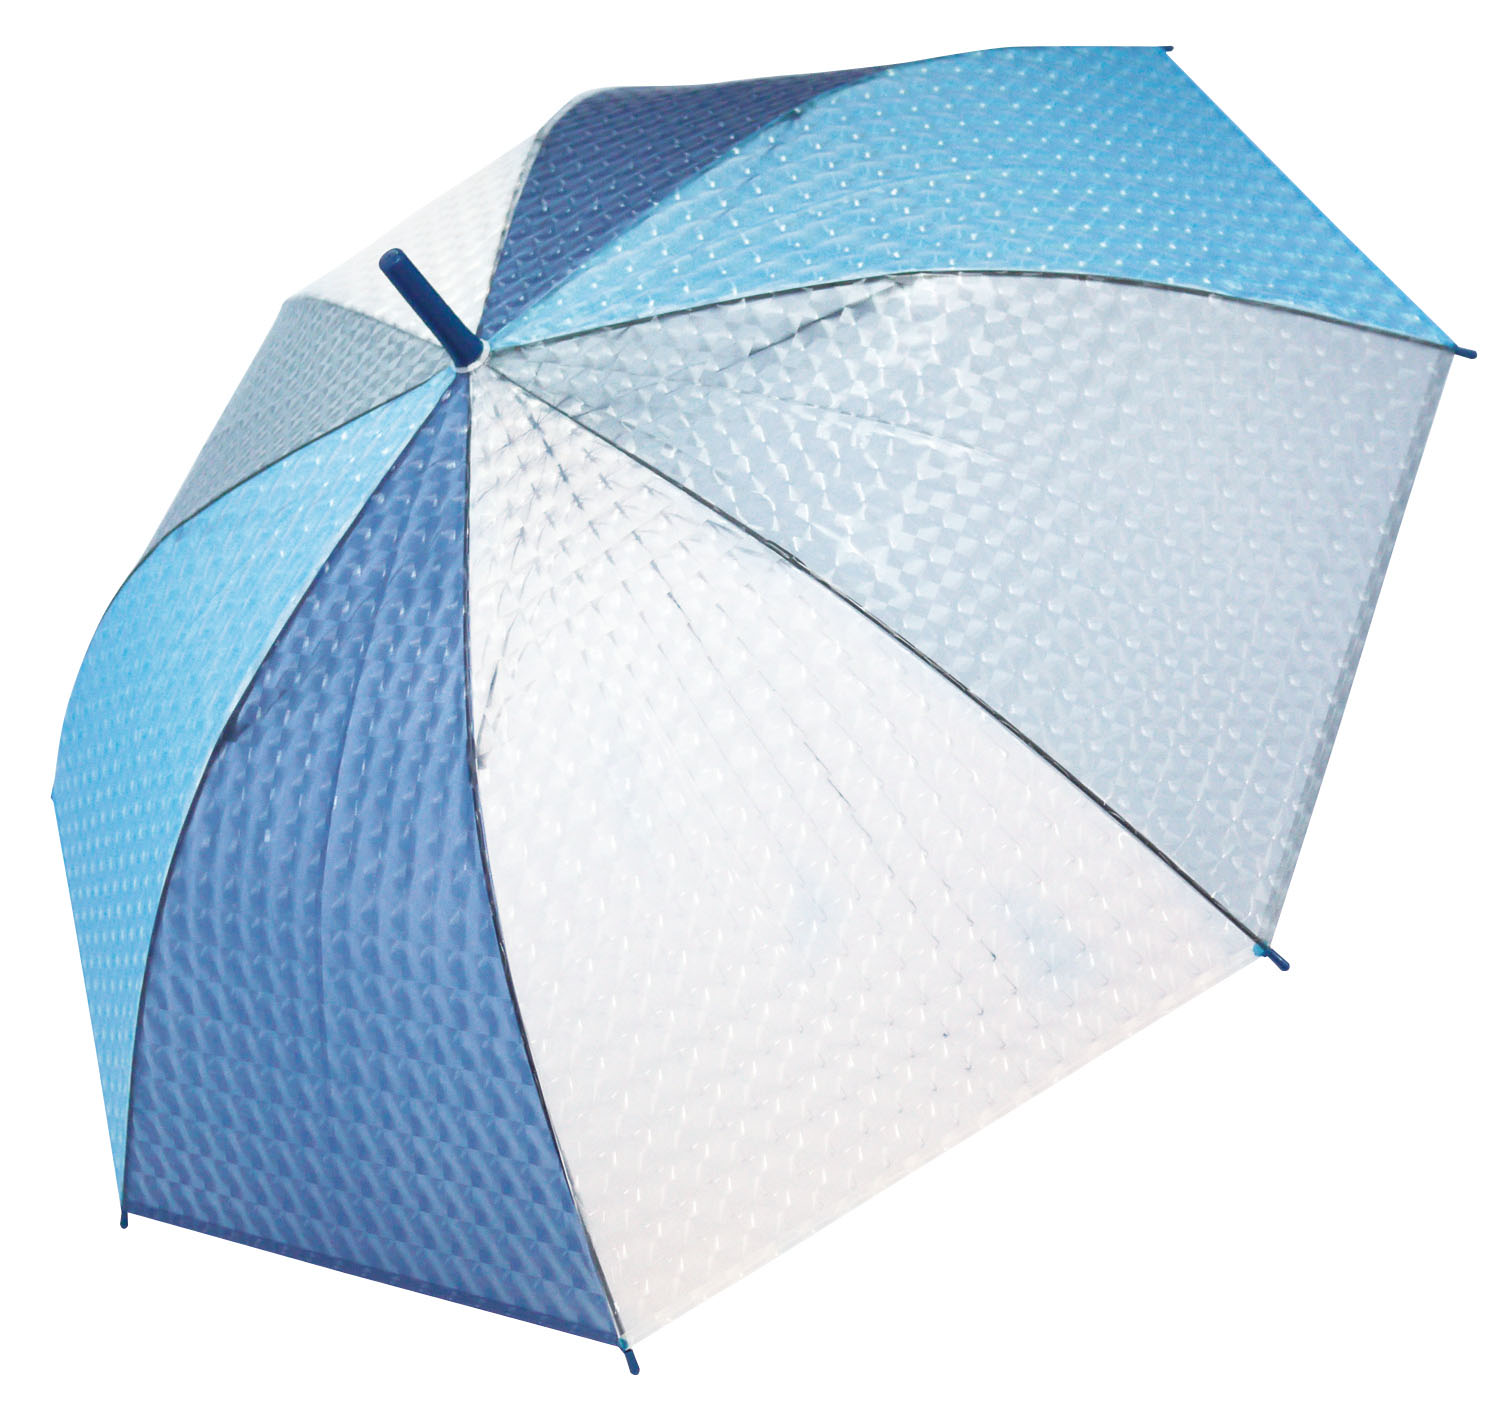 3D Hologram Umbrella Ladies Cool Blue